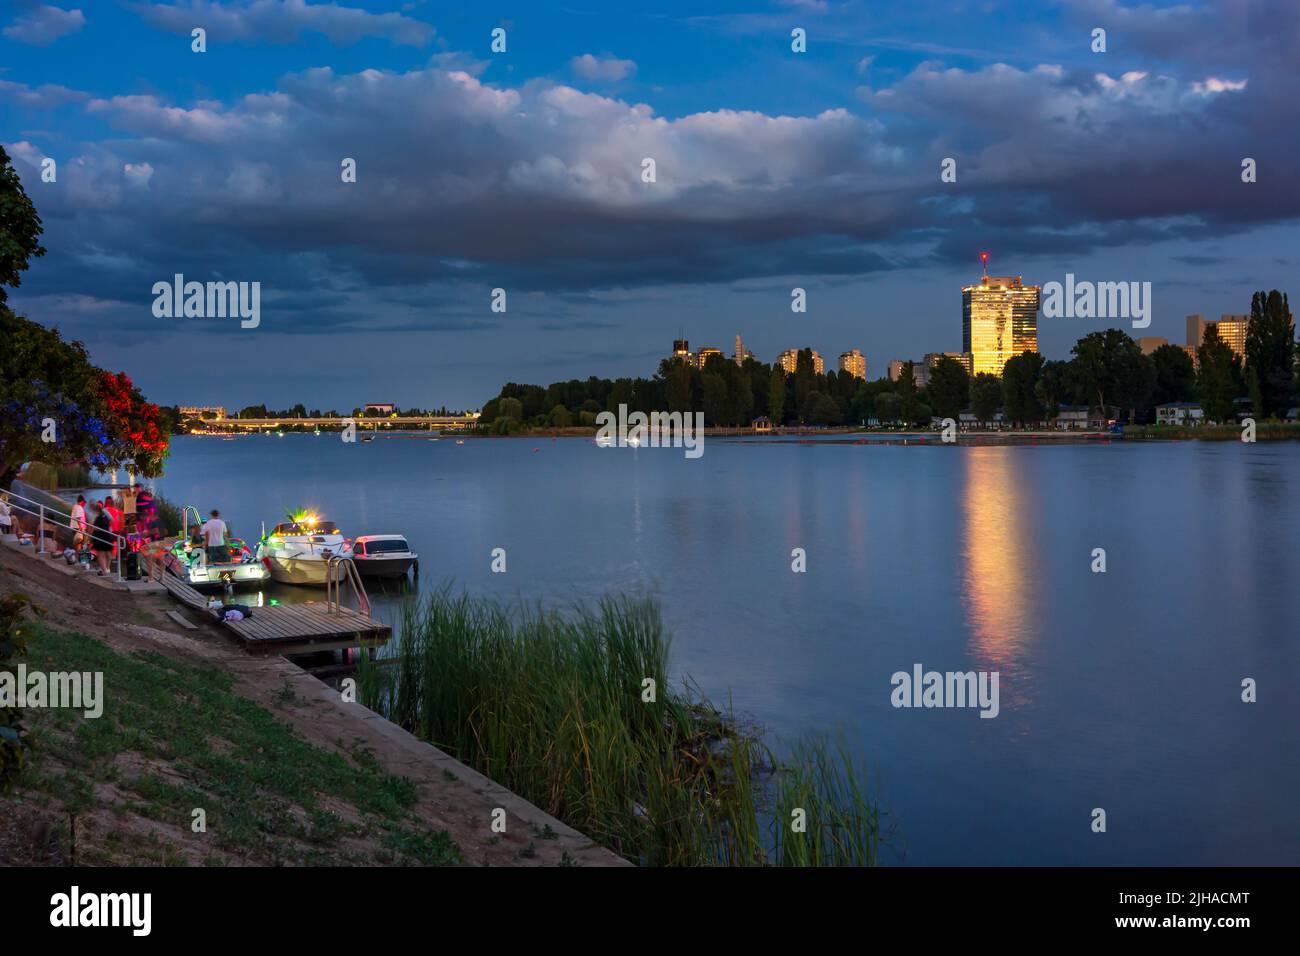 Viena: Lago oxbow Alte Donau (Danubio antiguo), puesta de sol, fiesta privada en los barcos, Torre IZD en 22. Donaustadt, Viena, Austria Foto de stock